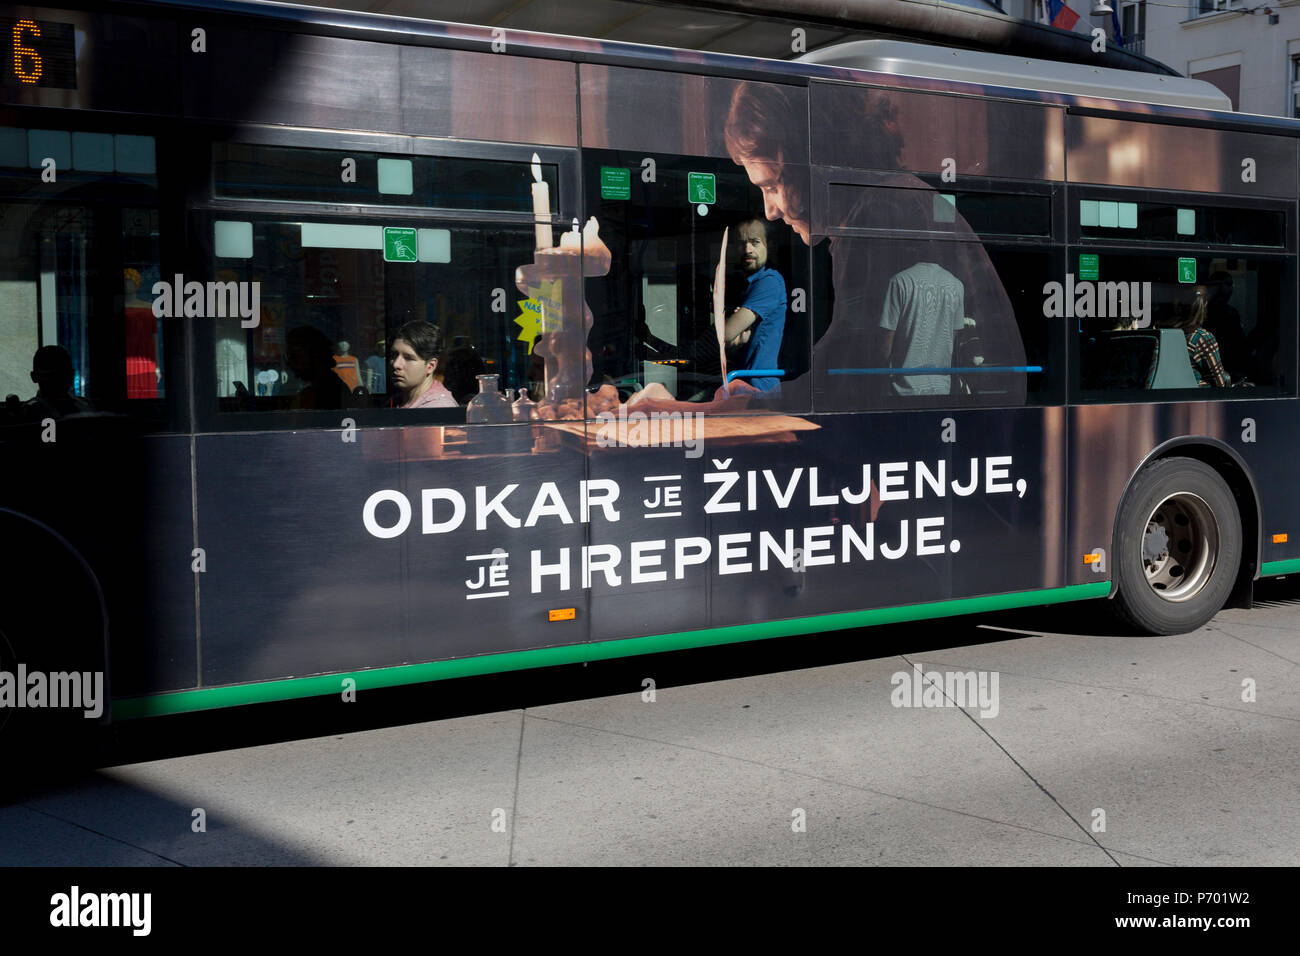 Autobus pubblicità su un autobus cittadino su Slovenska cesta (street) nella capitale slovena di Lubiana, il 25 giugno 2018, a Ljubljana, Slovenia. Lubiana gli autobus urbani sono azionati dal Ljubljanski potniški promet (LPP)'impresa di pubblica utilità. Foto Stock